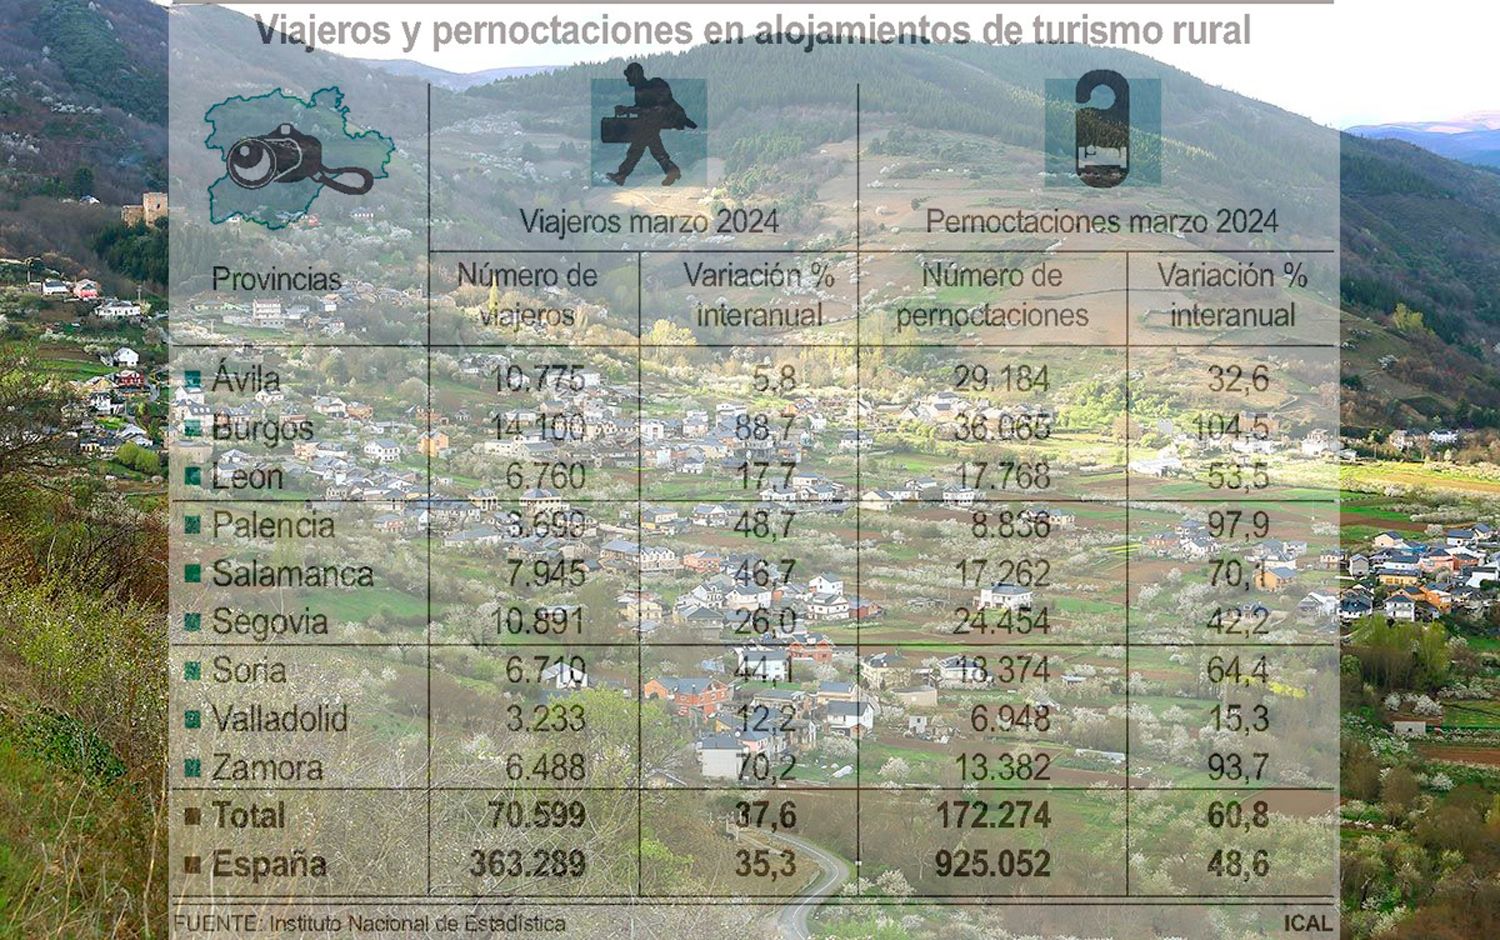 La provincia de León registra un aumento de más del 50% en las pernoctaciones de turismo rural en marzo